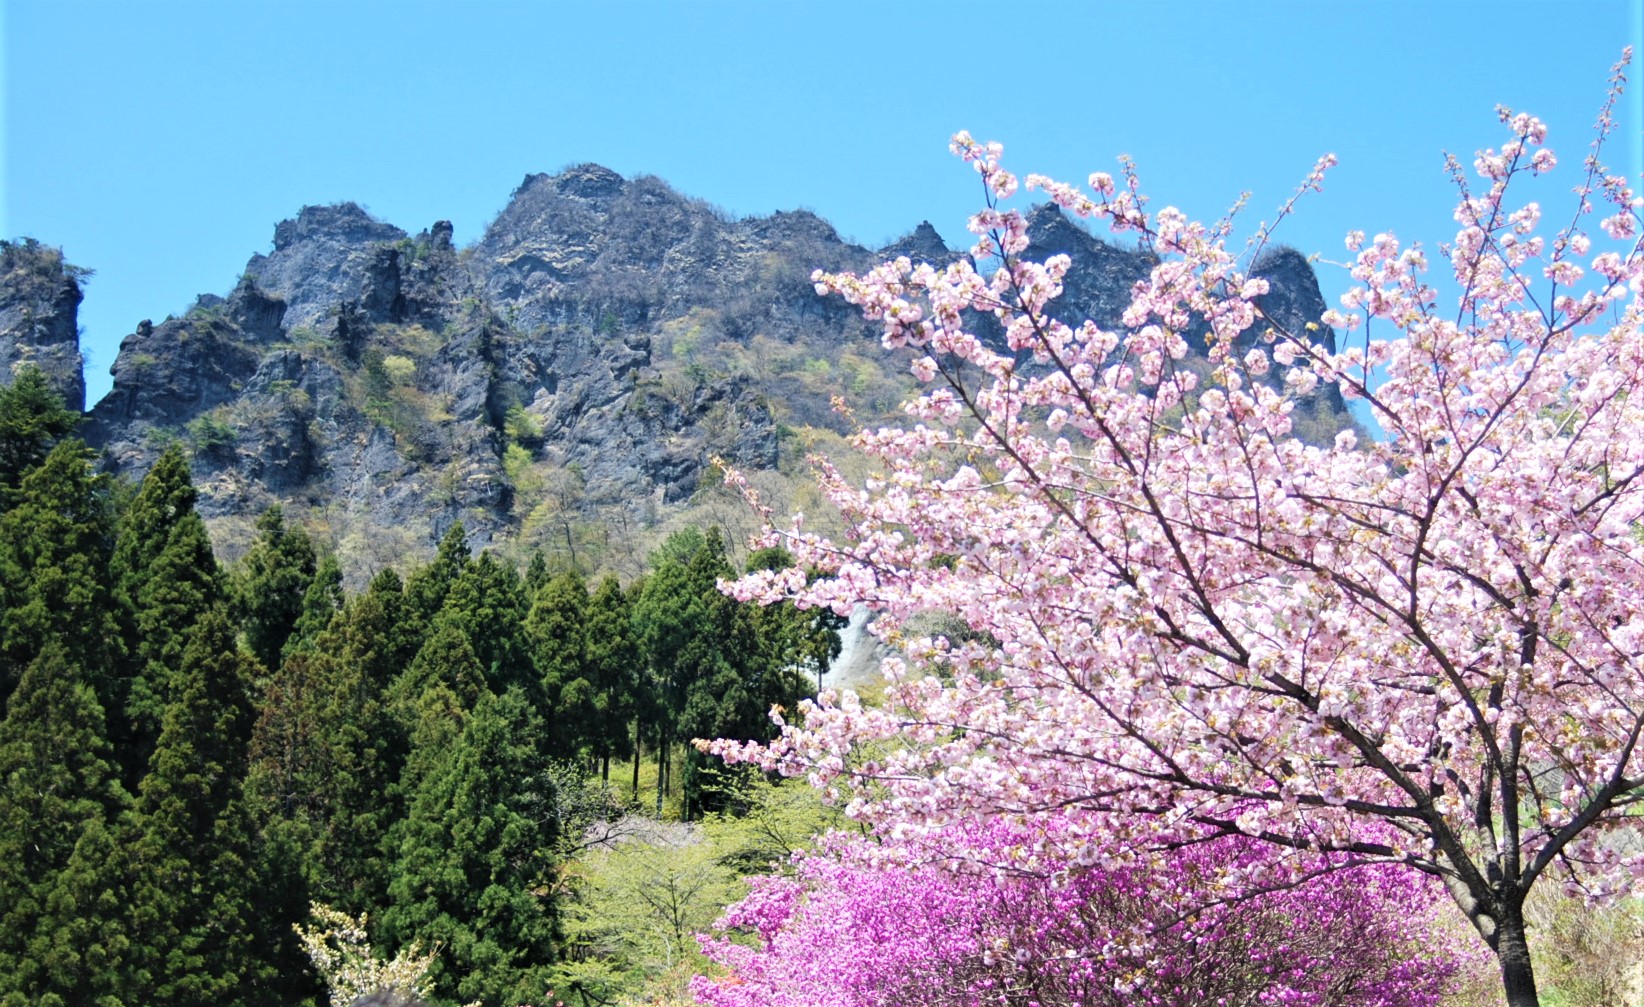 妙義山さくらの里の桜21 開花状況や見どころなど紹介 情報発信ブログサイト Blue Rose